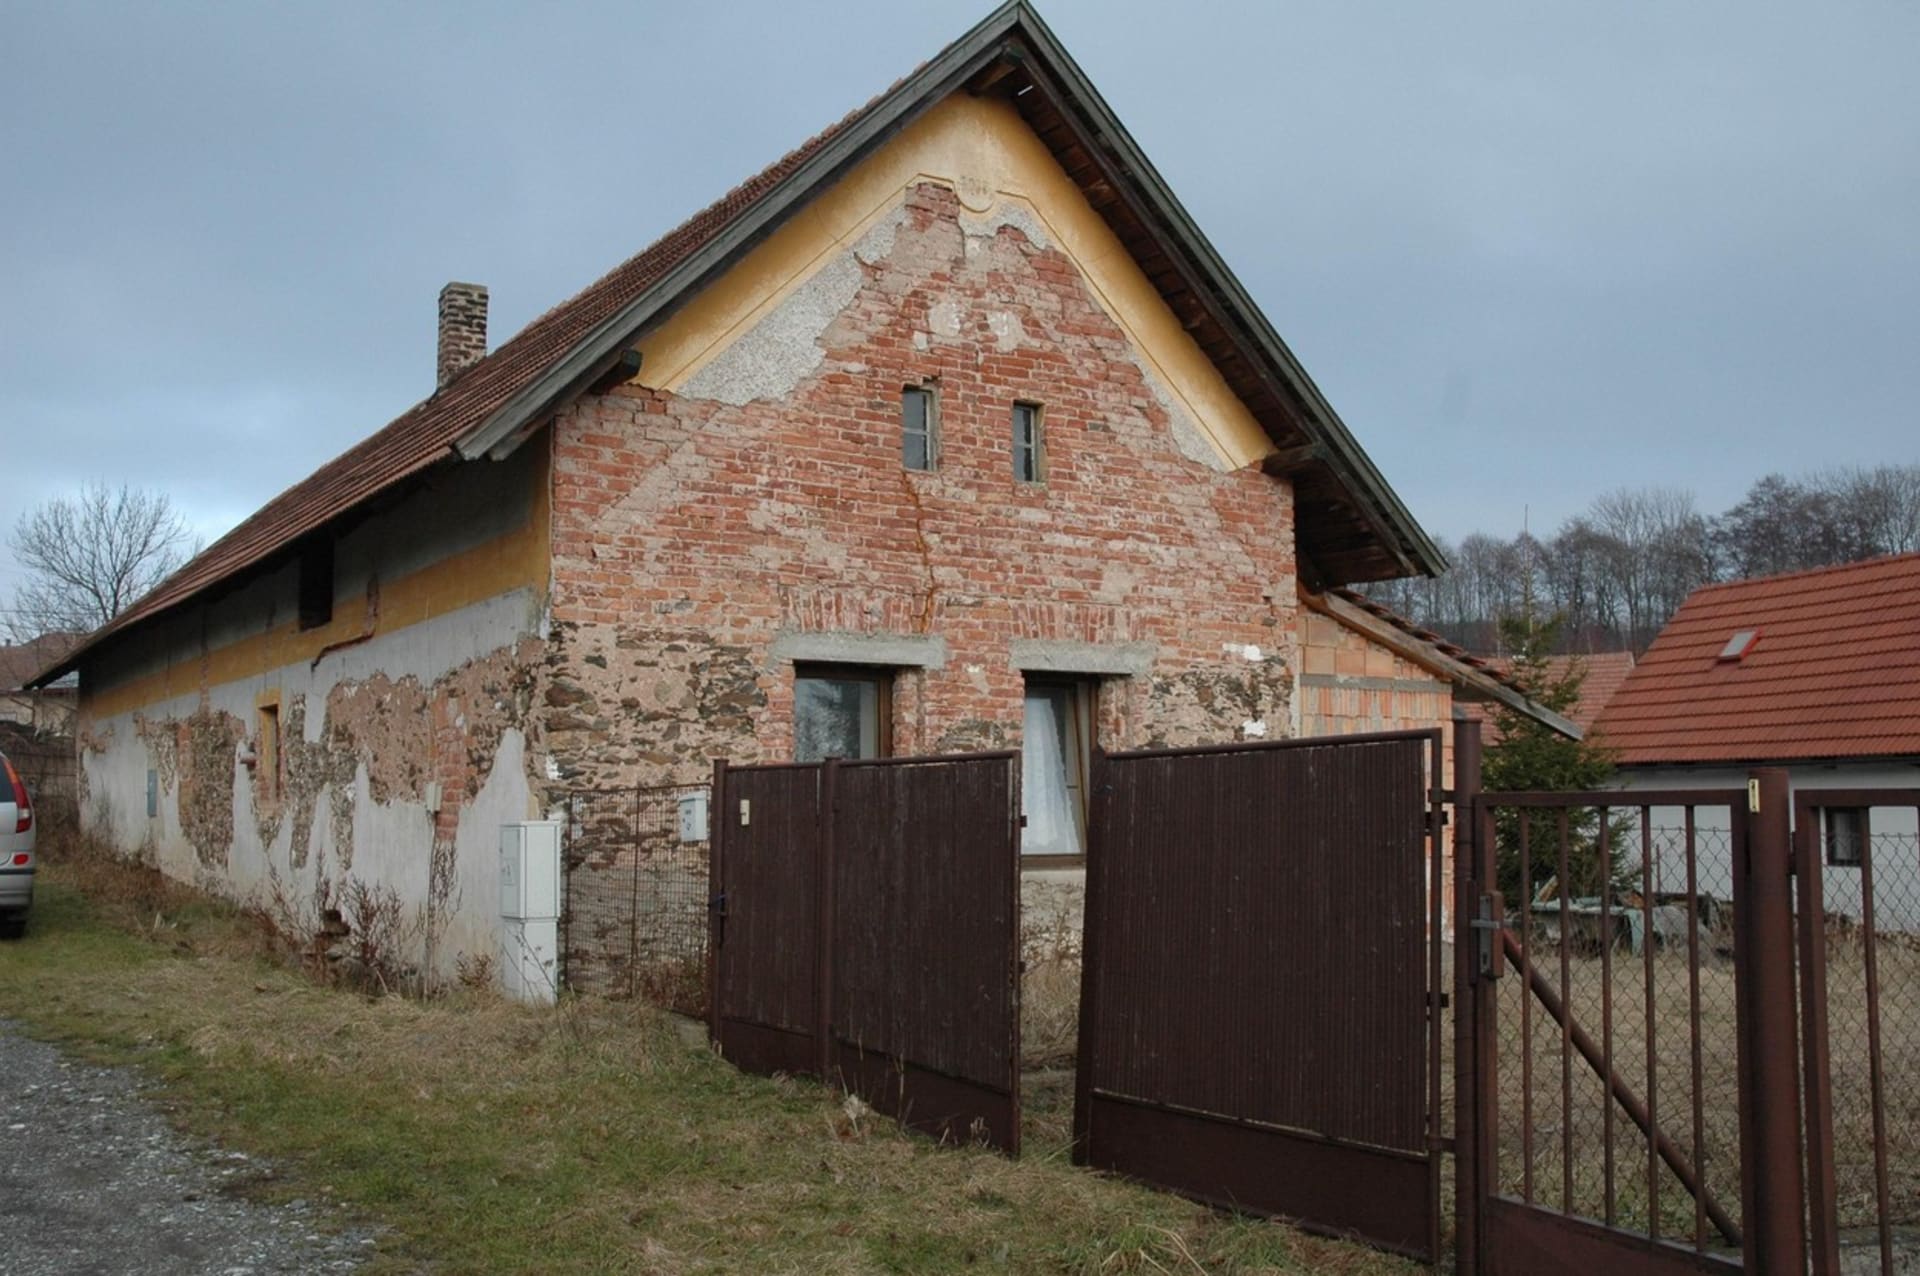 V tomto domě ve Skoranově žil uprchlý Pavel Němeček s údajně mladou slečnou než byl zatčen a uvězněn.